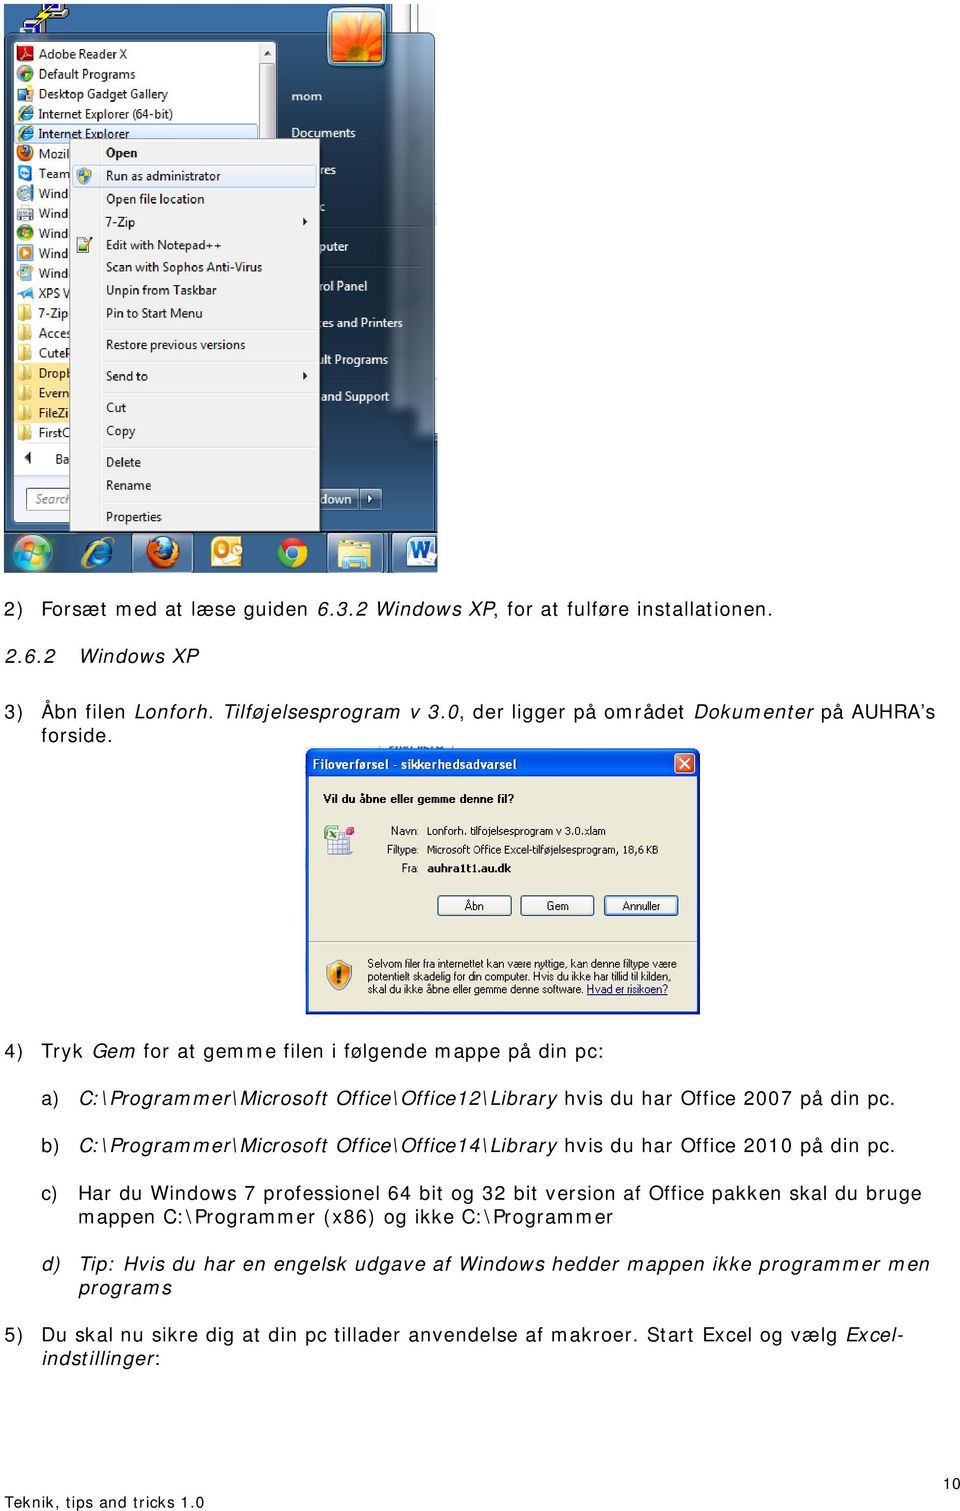 4) Tryk Gem for at gemme filen i følgende mappe på din pc: a) C:\Programmer\Microsoft Office\Office12\Library hvis du har Office 2007 på din pc.